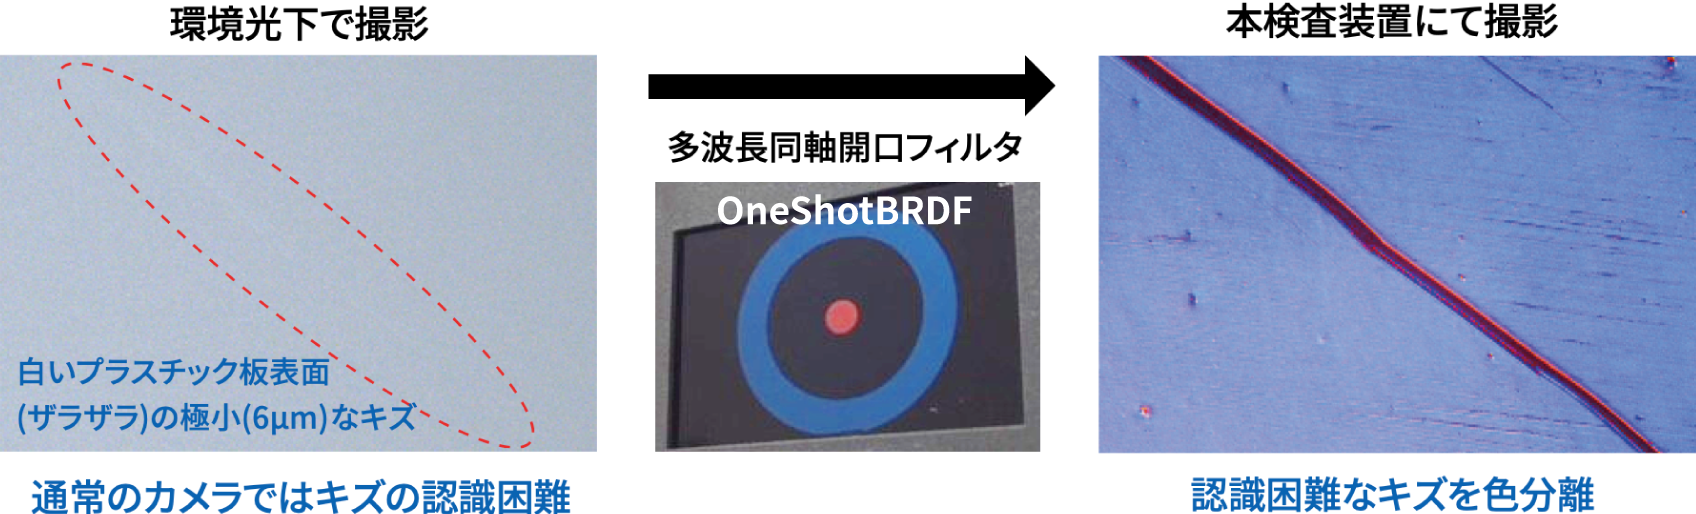 光学検査技術「OneShotBRDF」が解決します